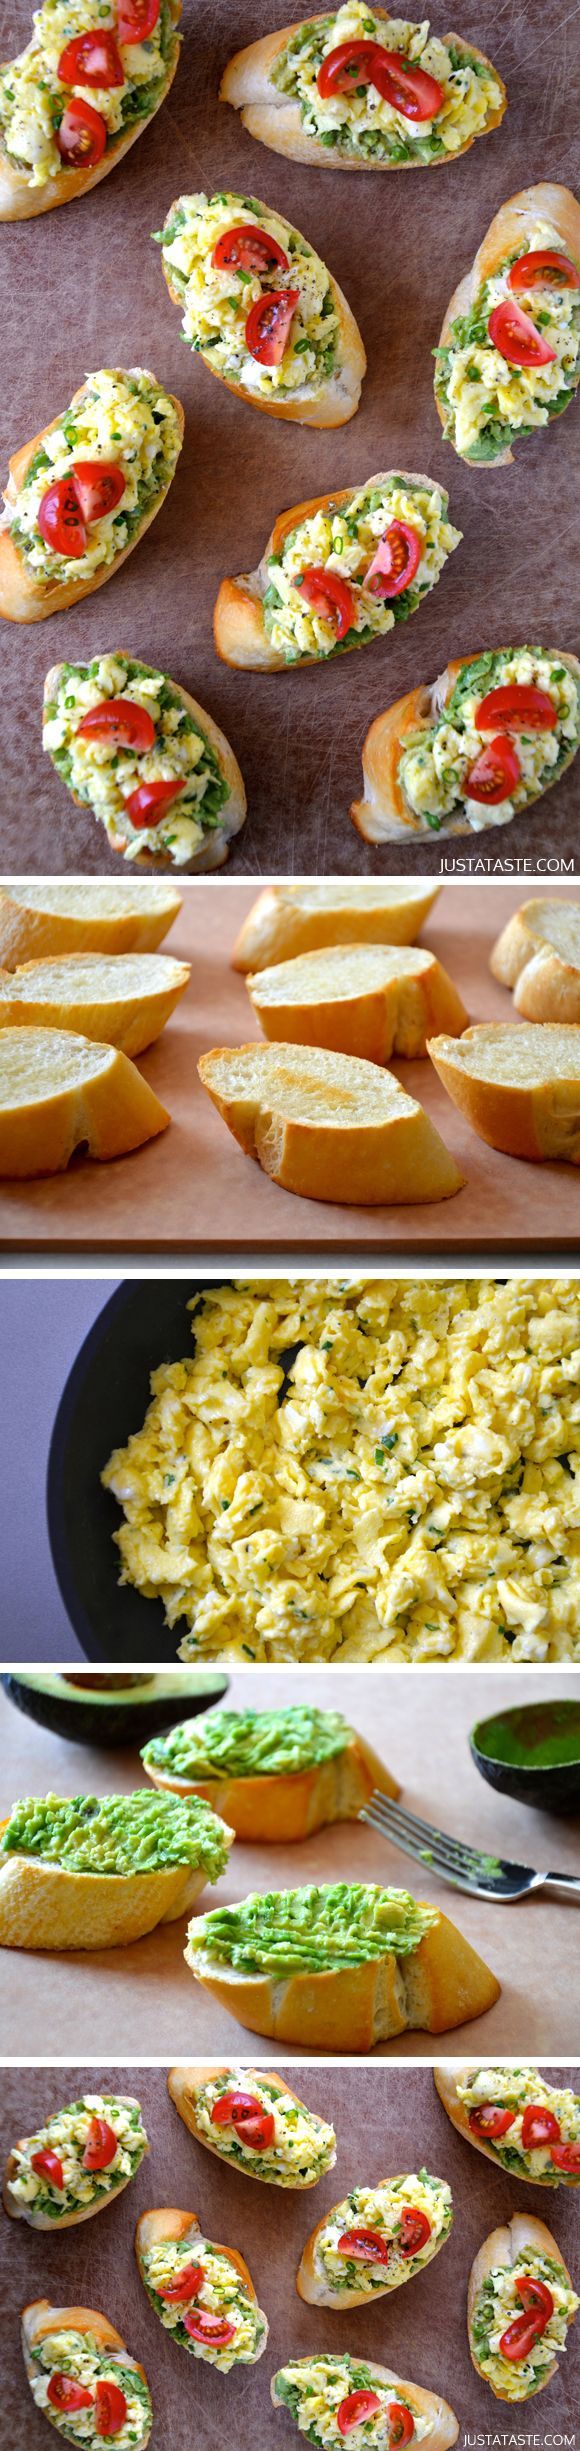 Quick and Easy Breakfast Bruschetta by justataste #Breakfast#Bruschetta